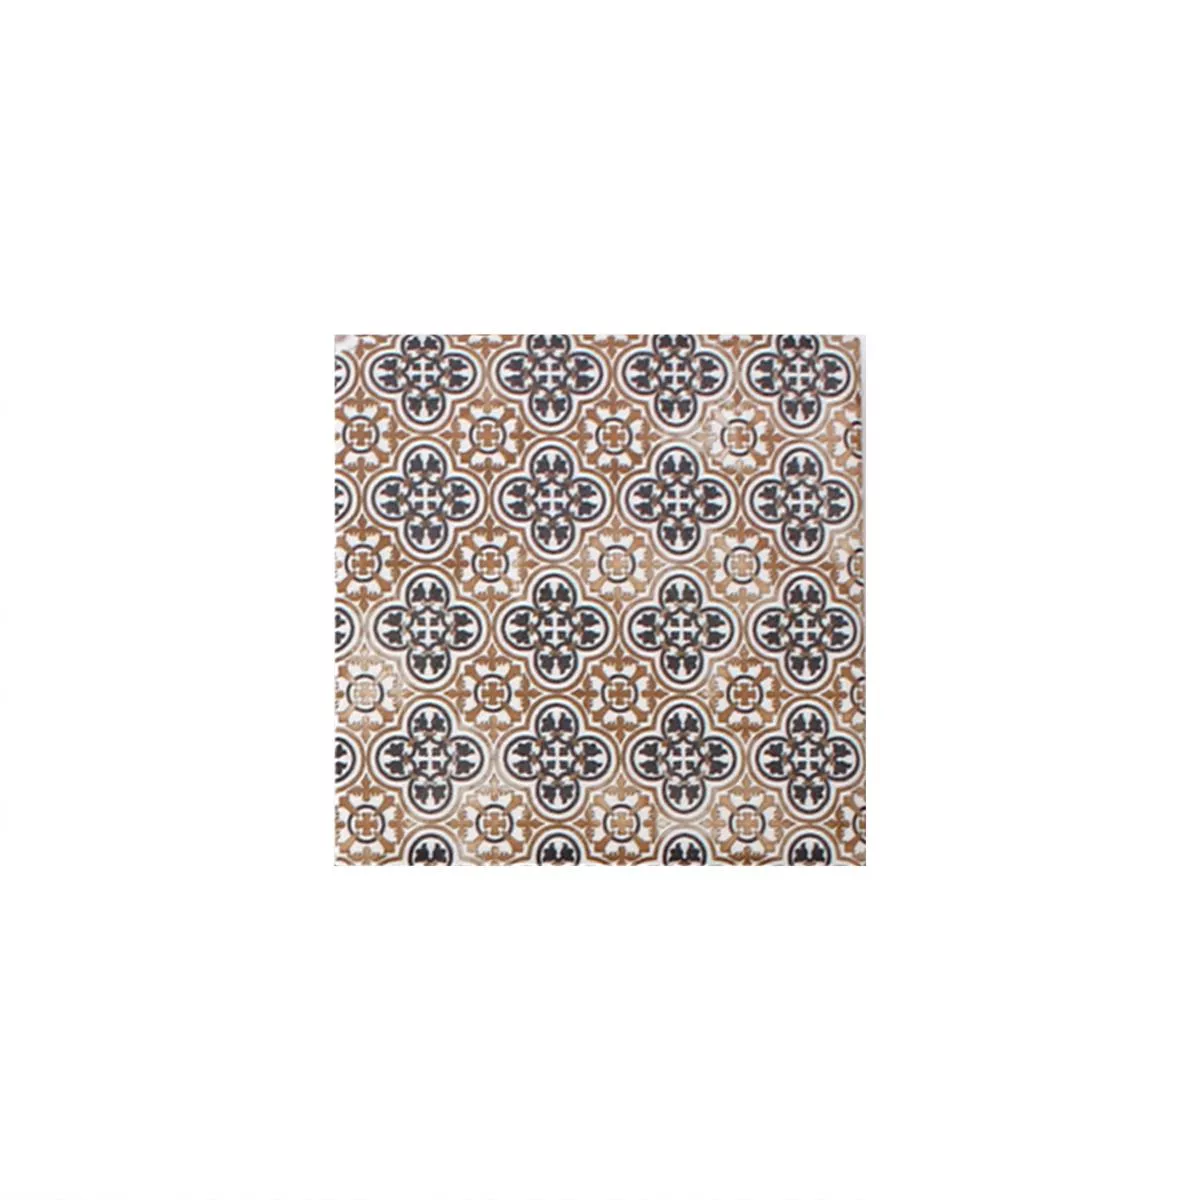 Sample Mosaic Tiles Ceramic Cement Optic Classico